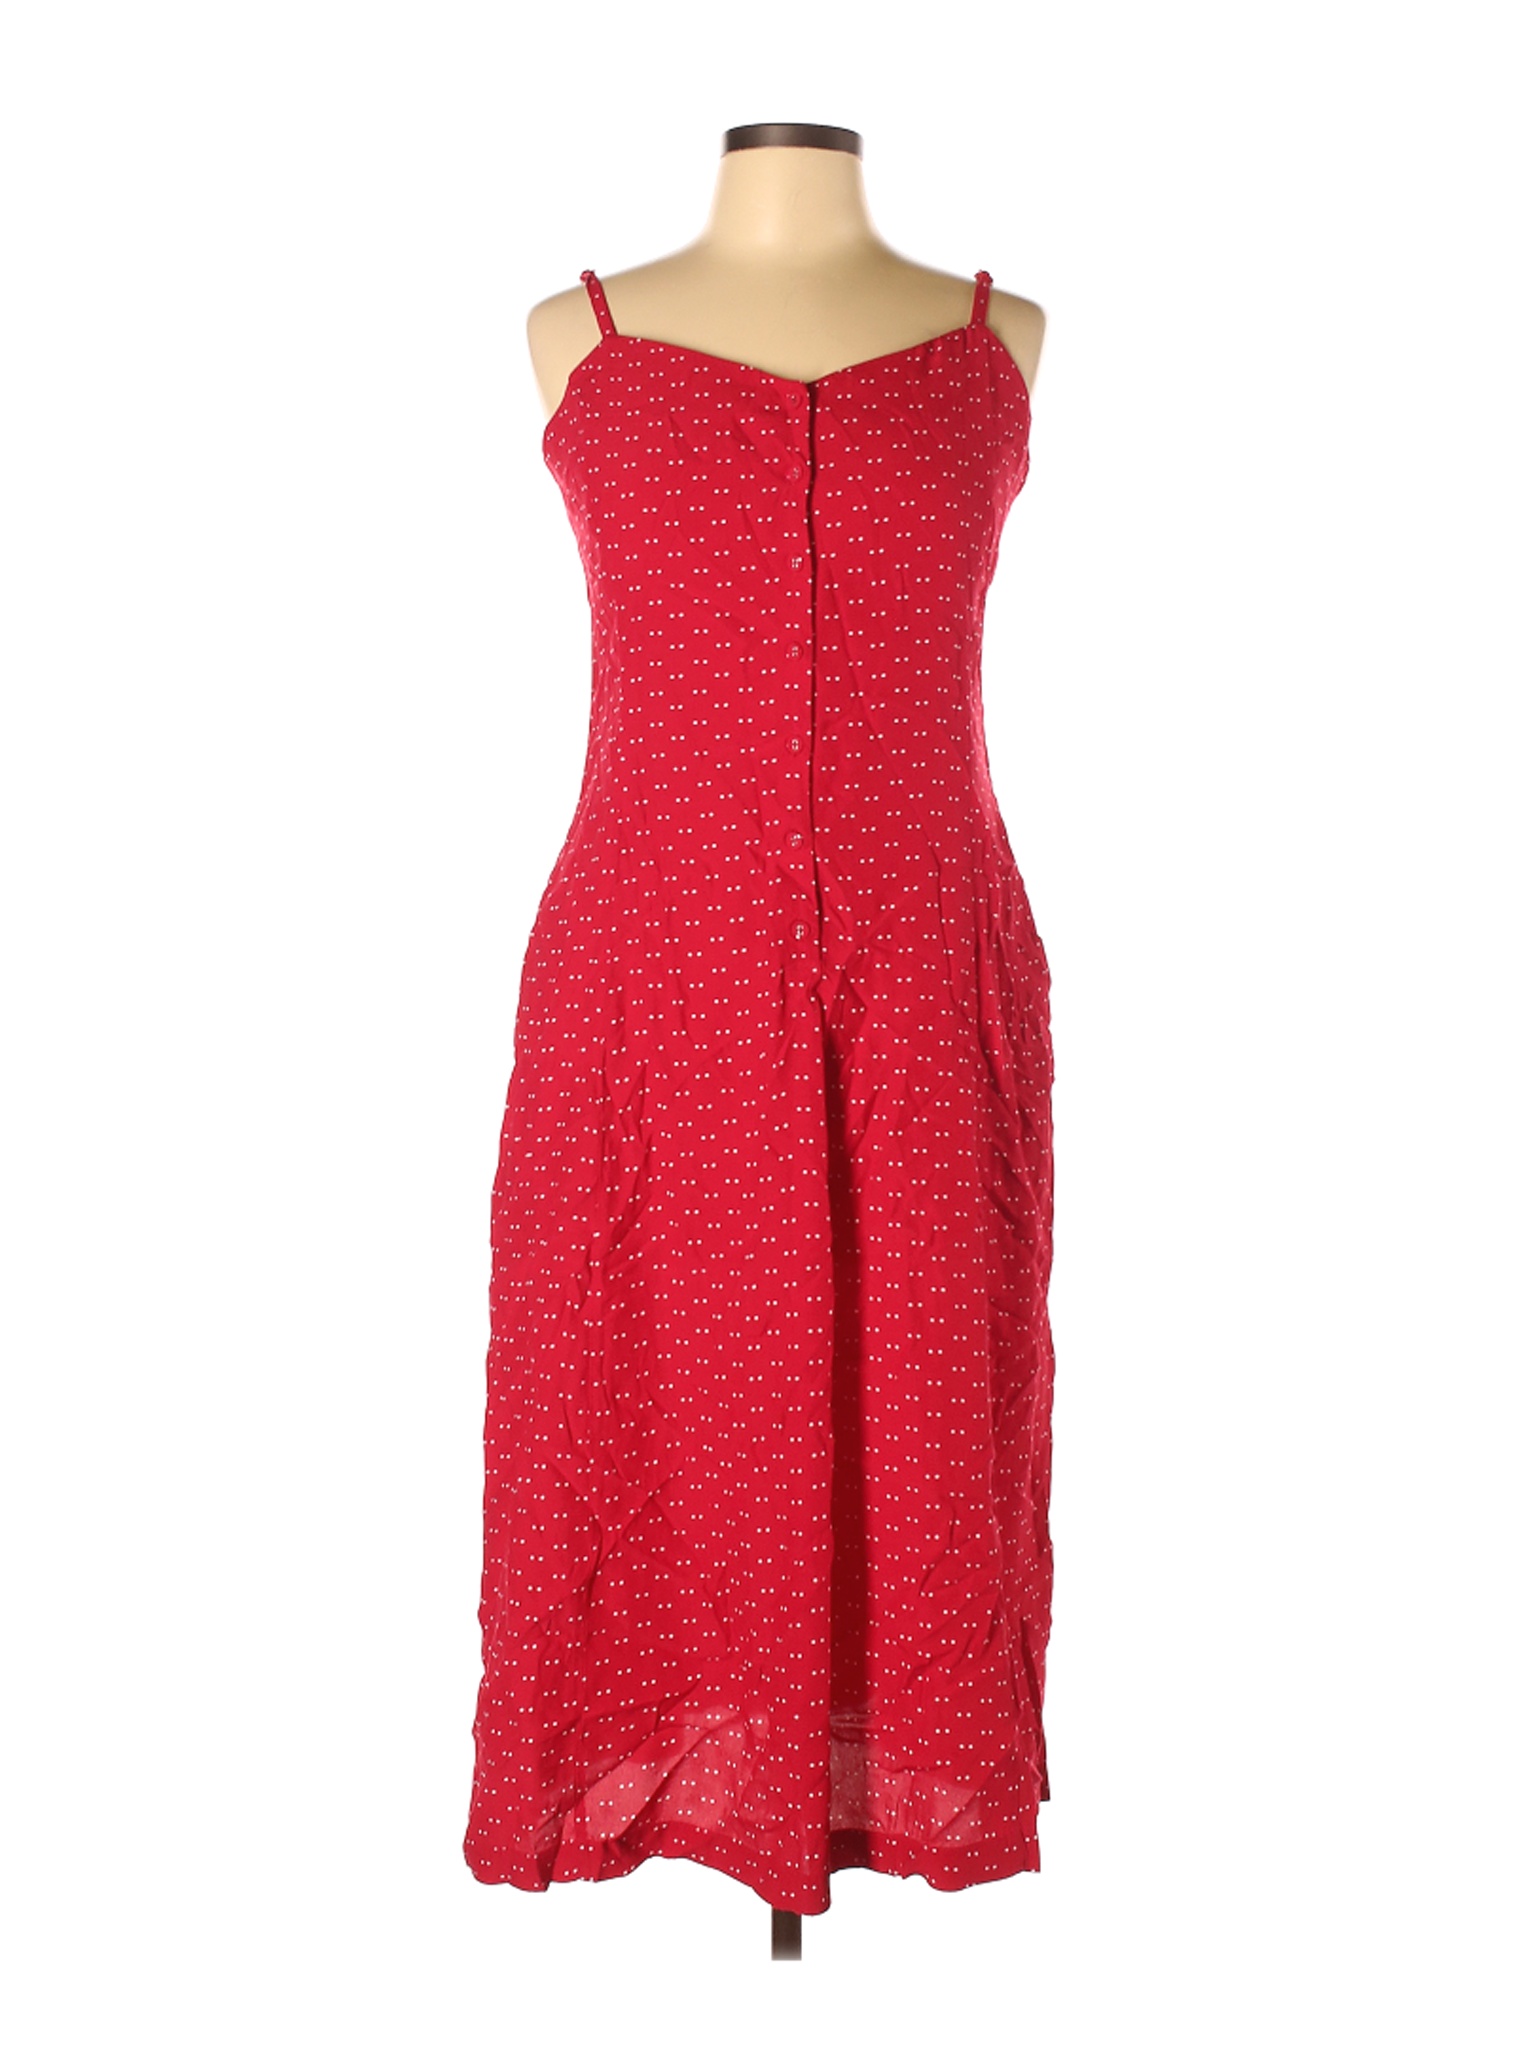 Uniqlo Women Red Casual Dress L | eBay